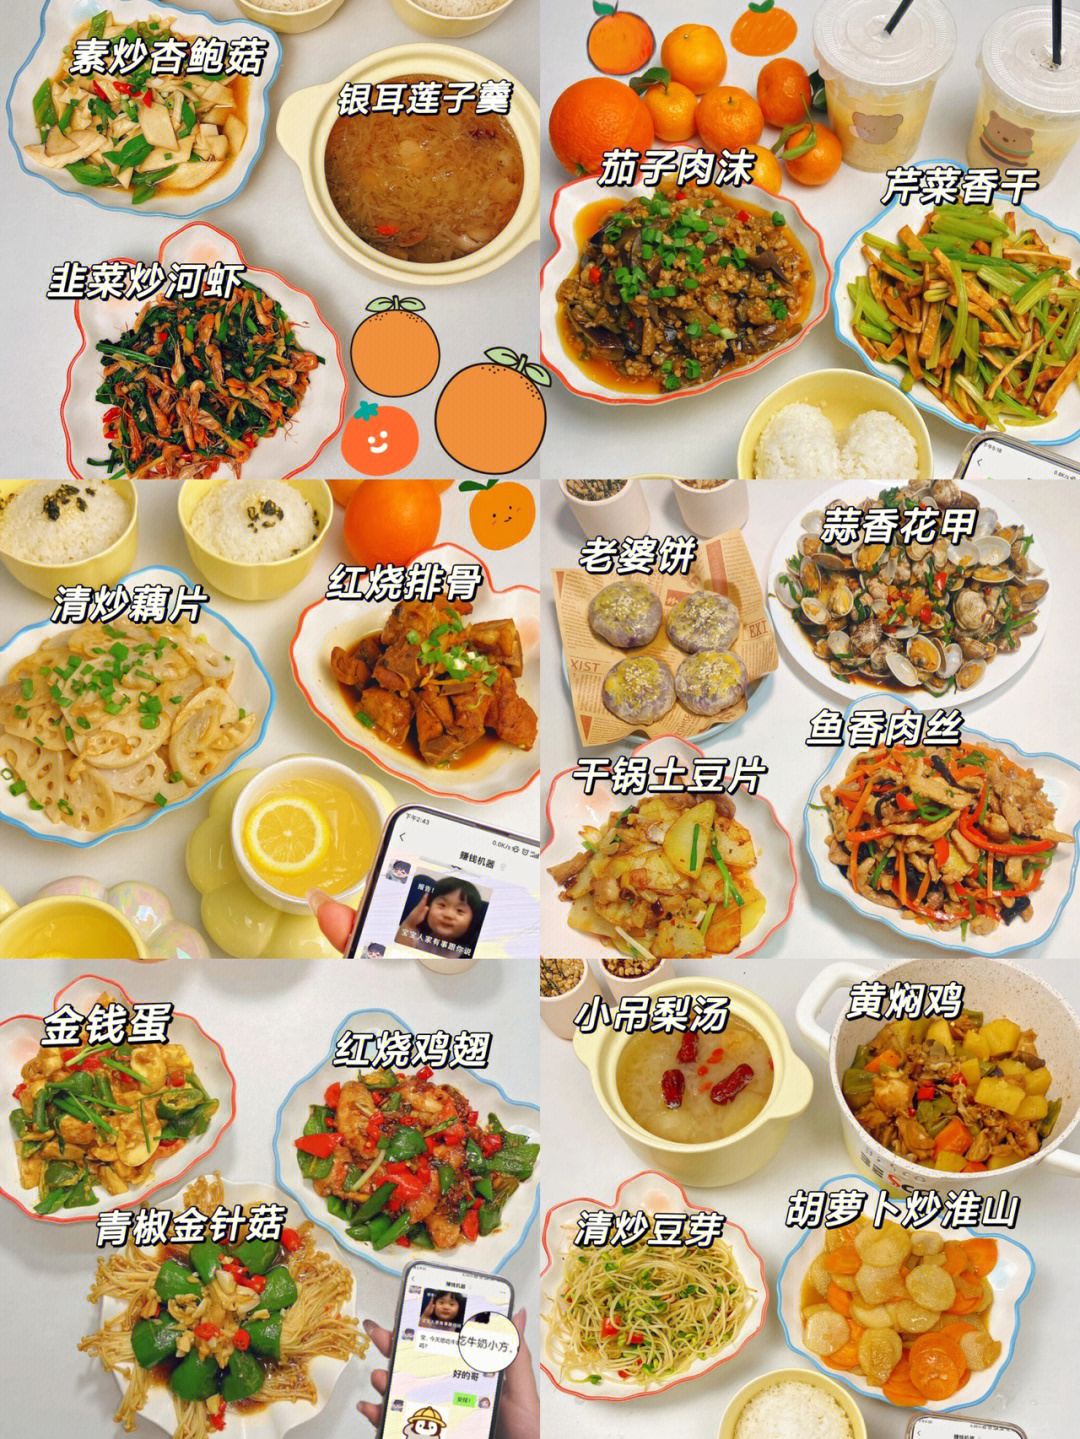 晚餐食谱 清淡 营养图片